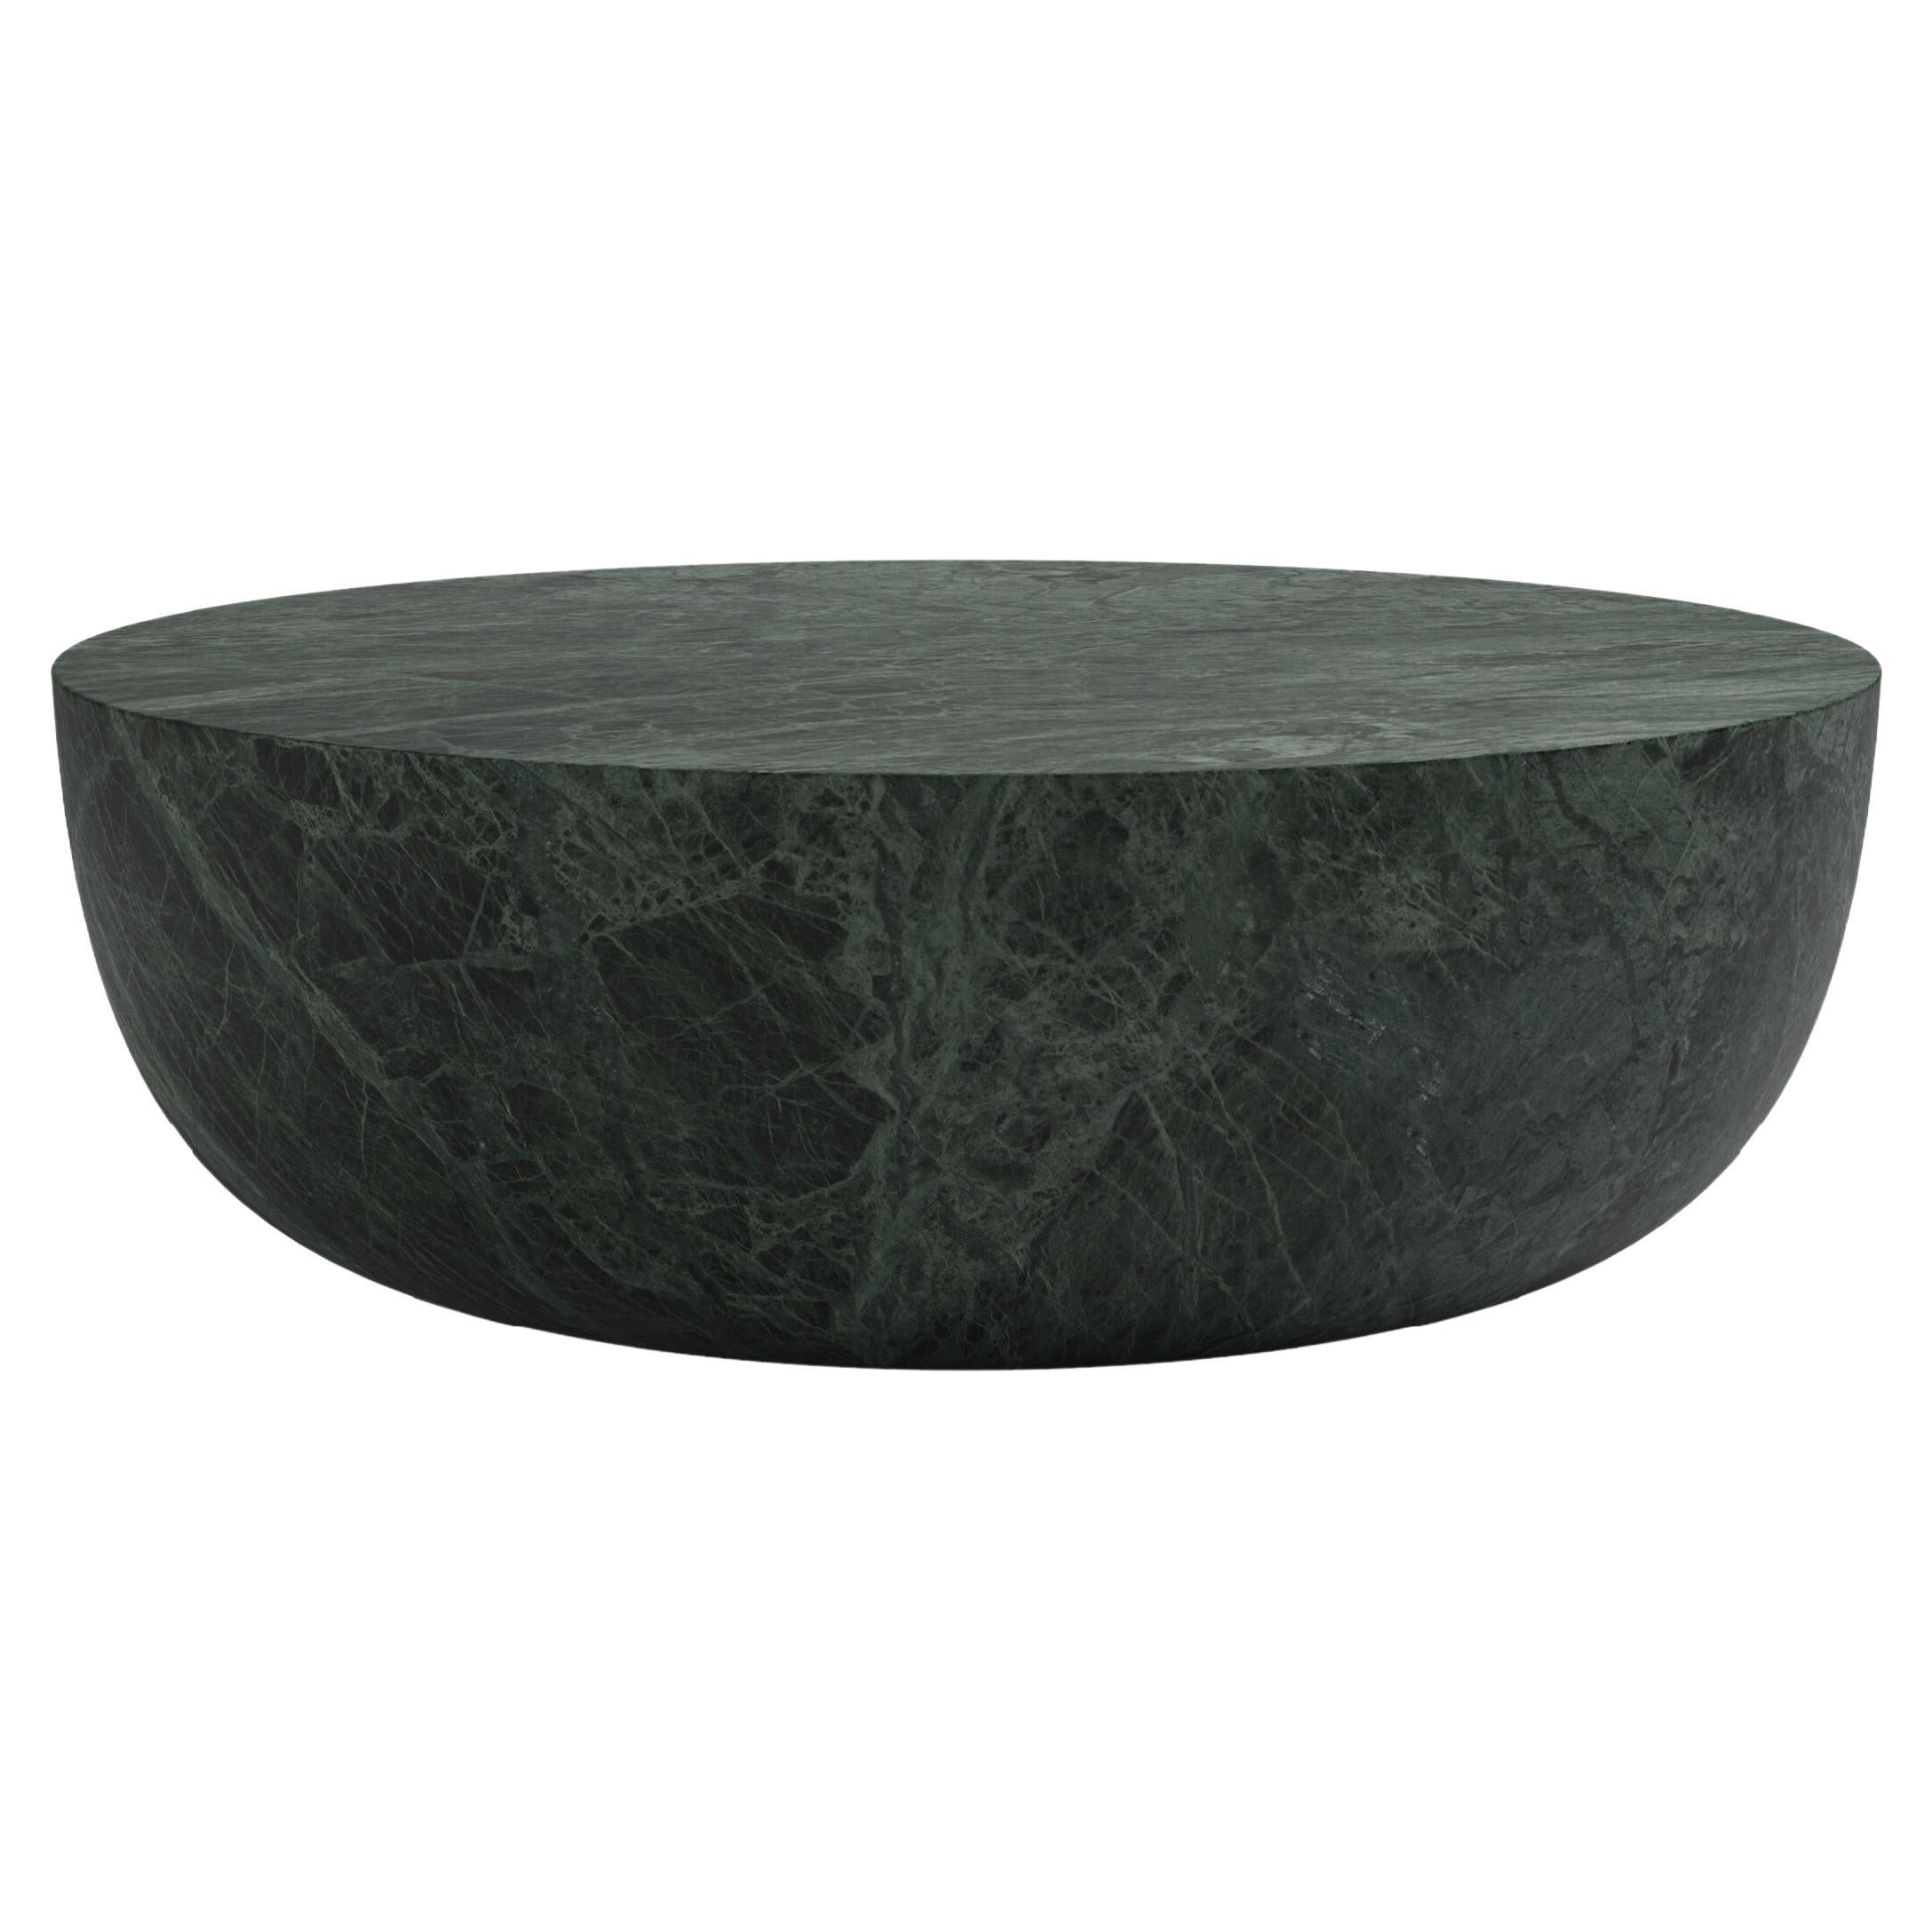 FORM(LA) Sfera Round Coffee Table 42”L x 42”W x 16”H Verde Guatemala Marble